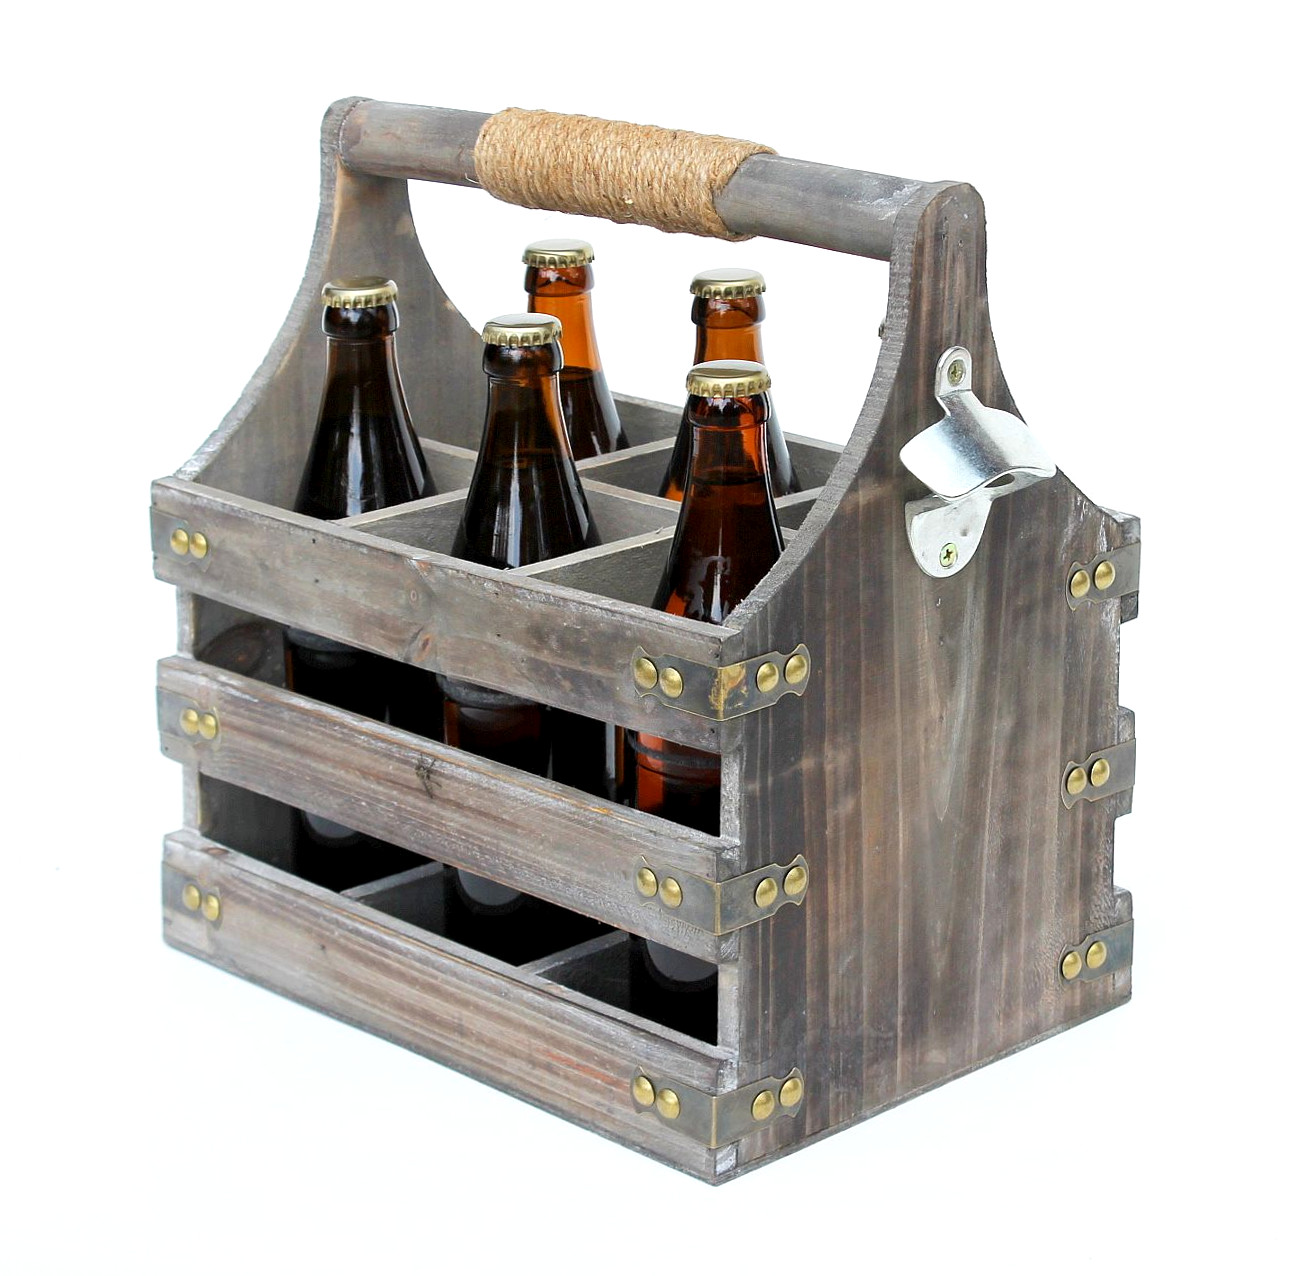 DanDiBo Bierträger aus Flaschenöffner Flaschenkorb mit Männerhandtasche Männergeschenke-DanDiBo Flaschenträger Holz 93860 Öffner